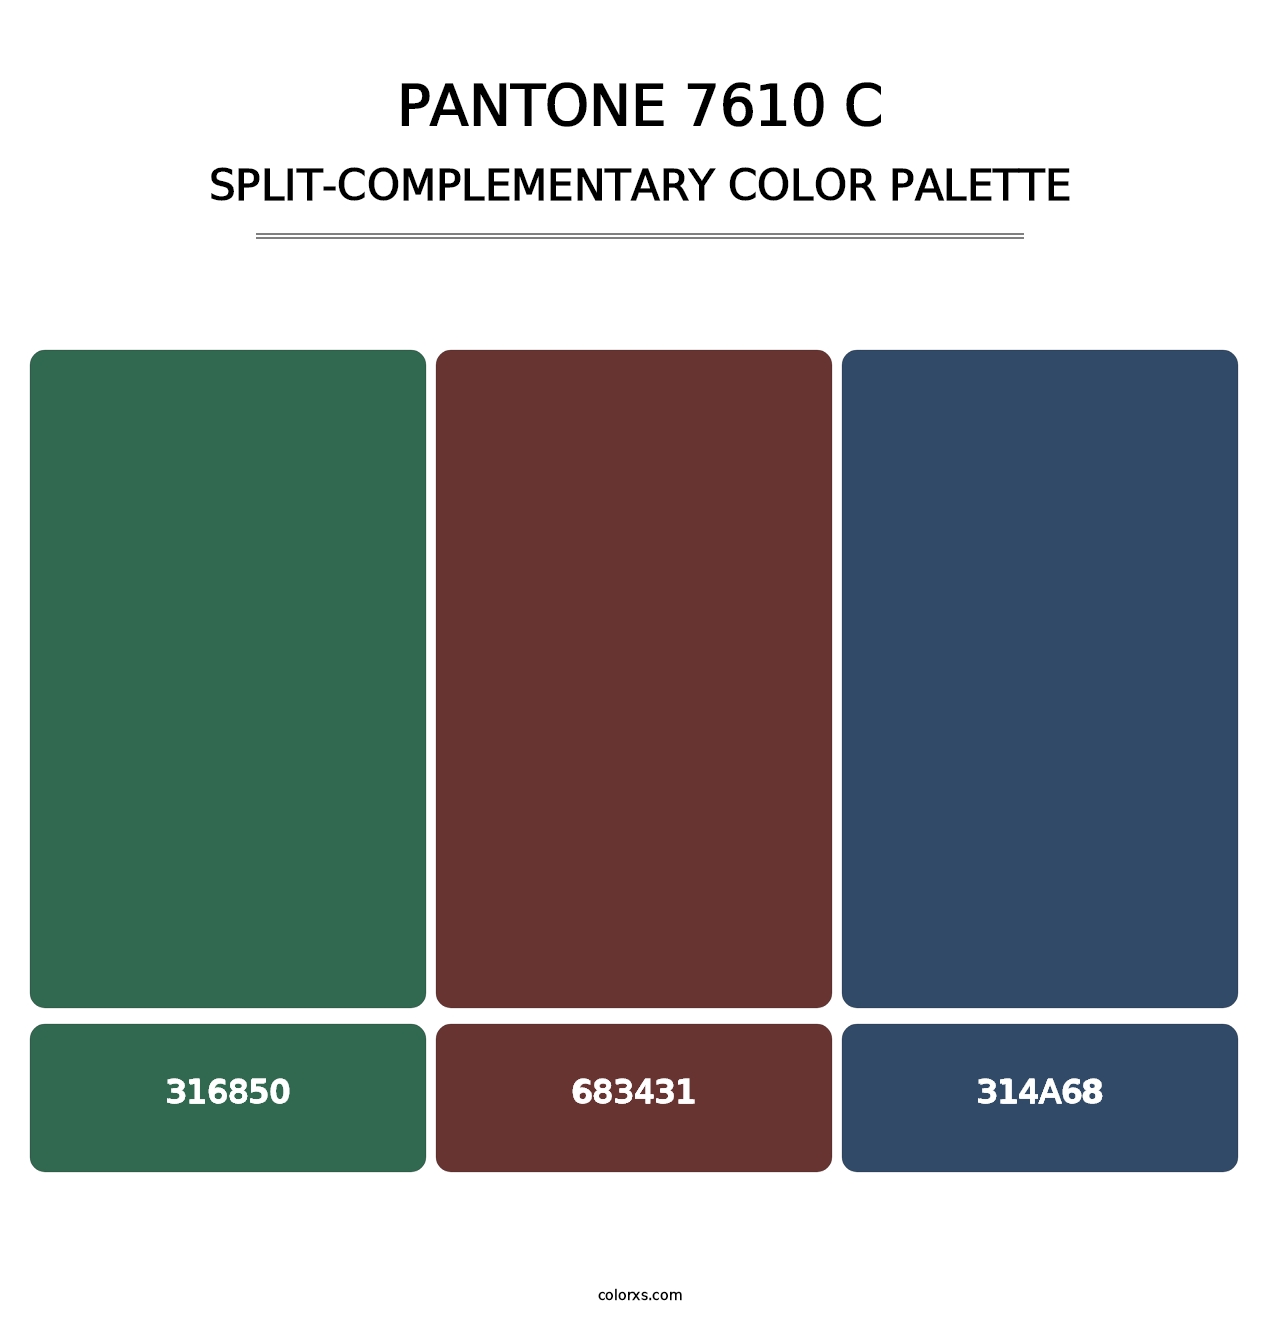 PANTONE 7610 C - Split-Complementary Color Palette